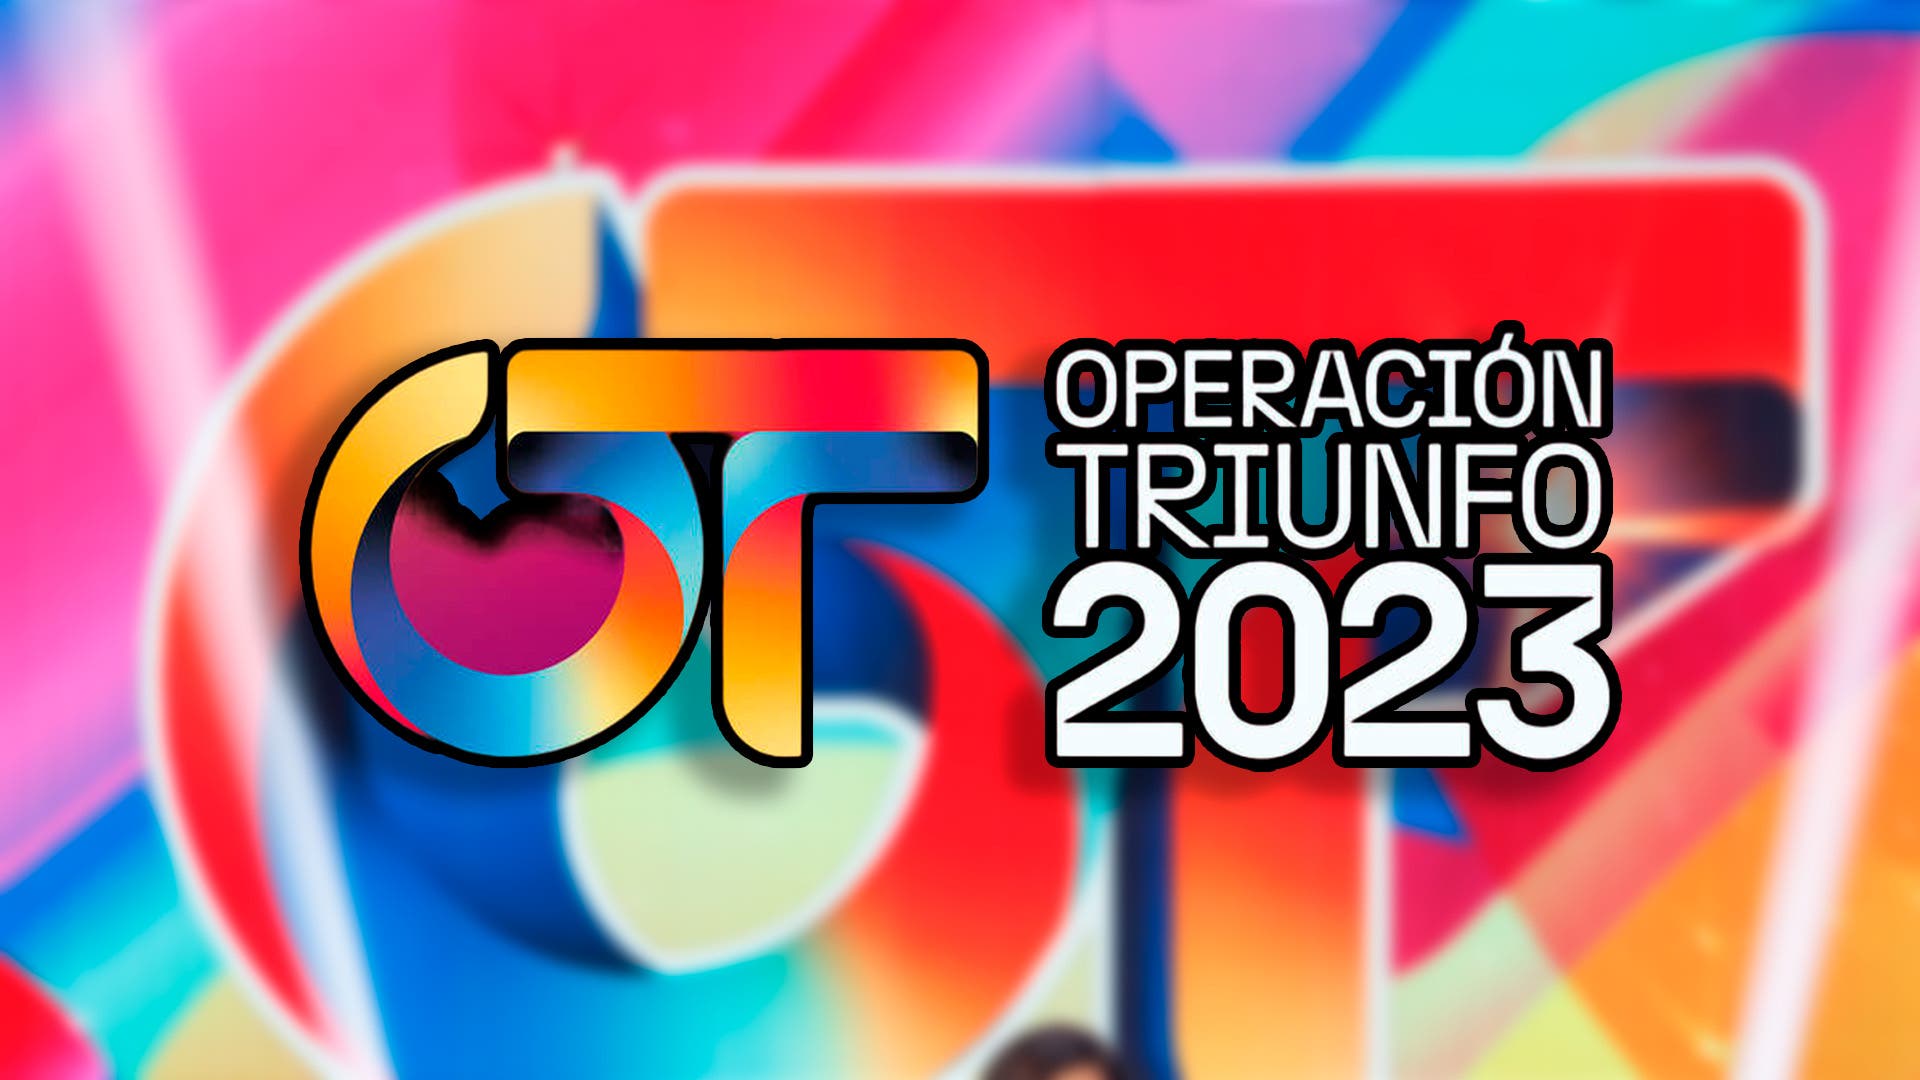 Operación Triunfo 2023: música, letras, canciones, discos